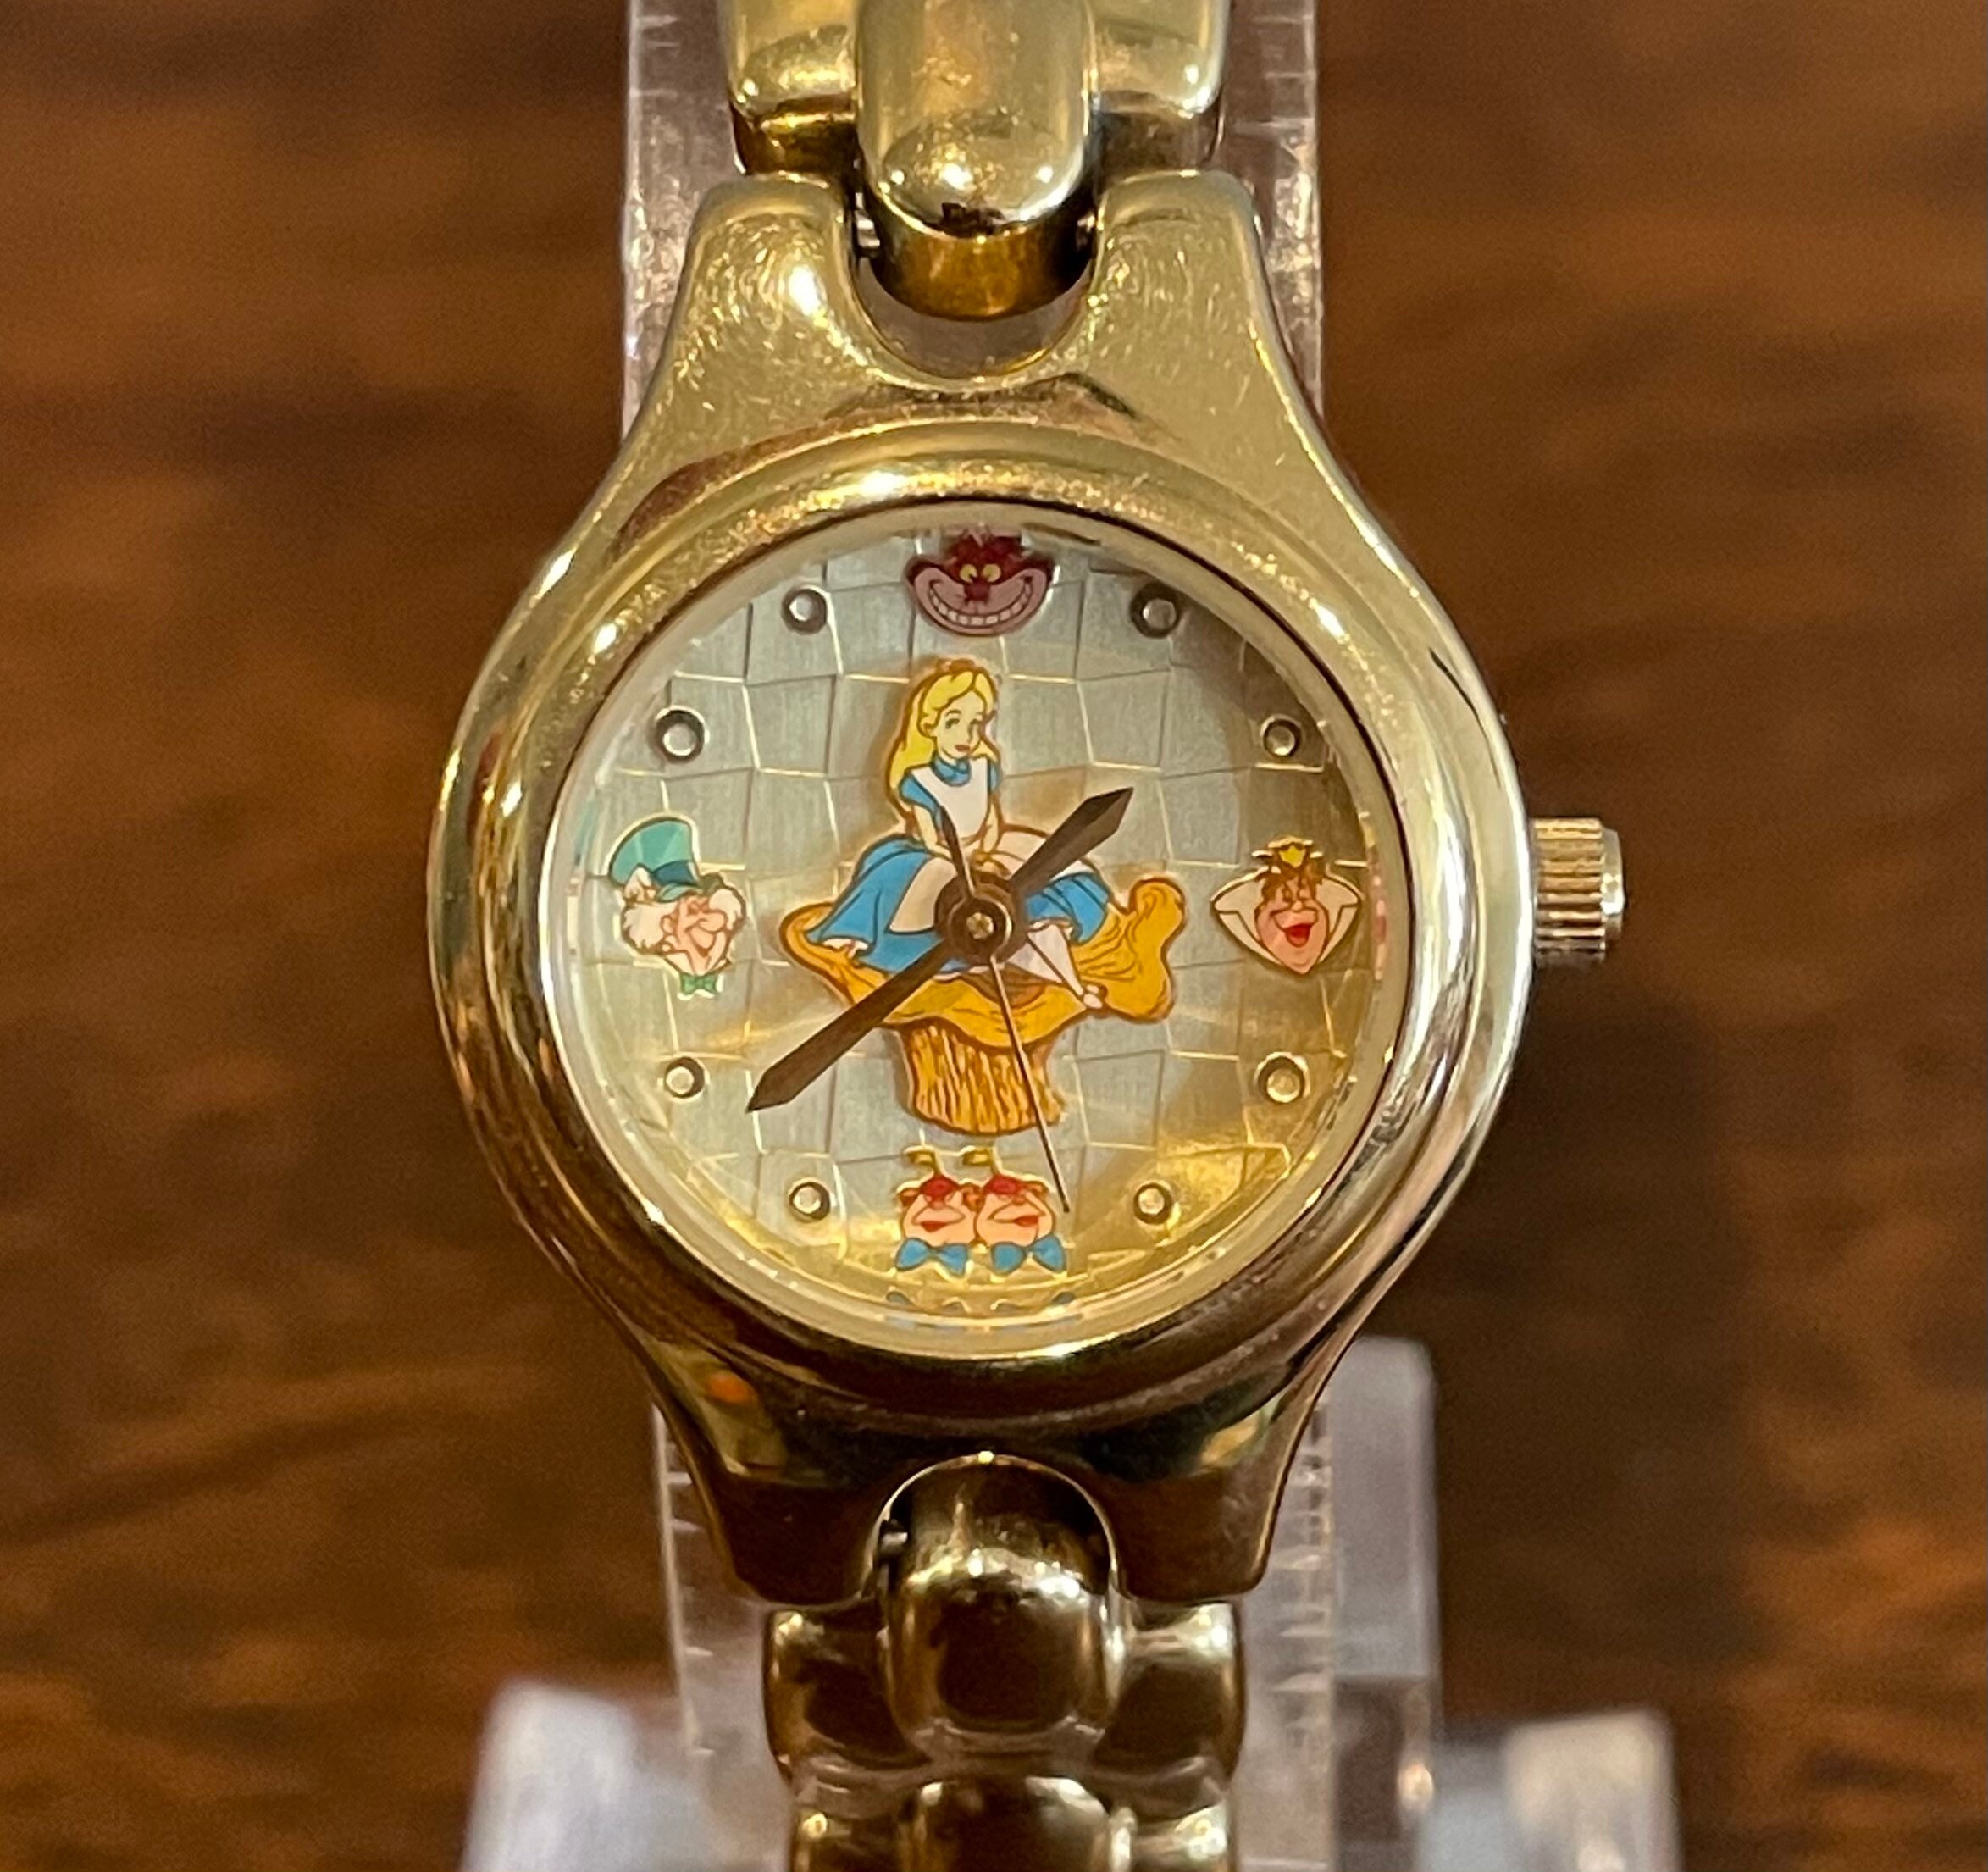 1990s Timex Disney Alice in Wonderland Watch Vintage Womens Disney Alice  and White Rabbit Watch 